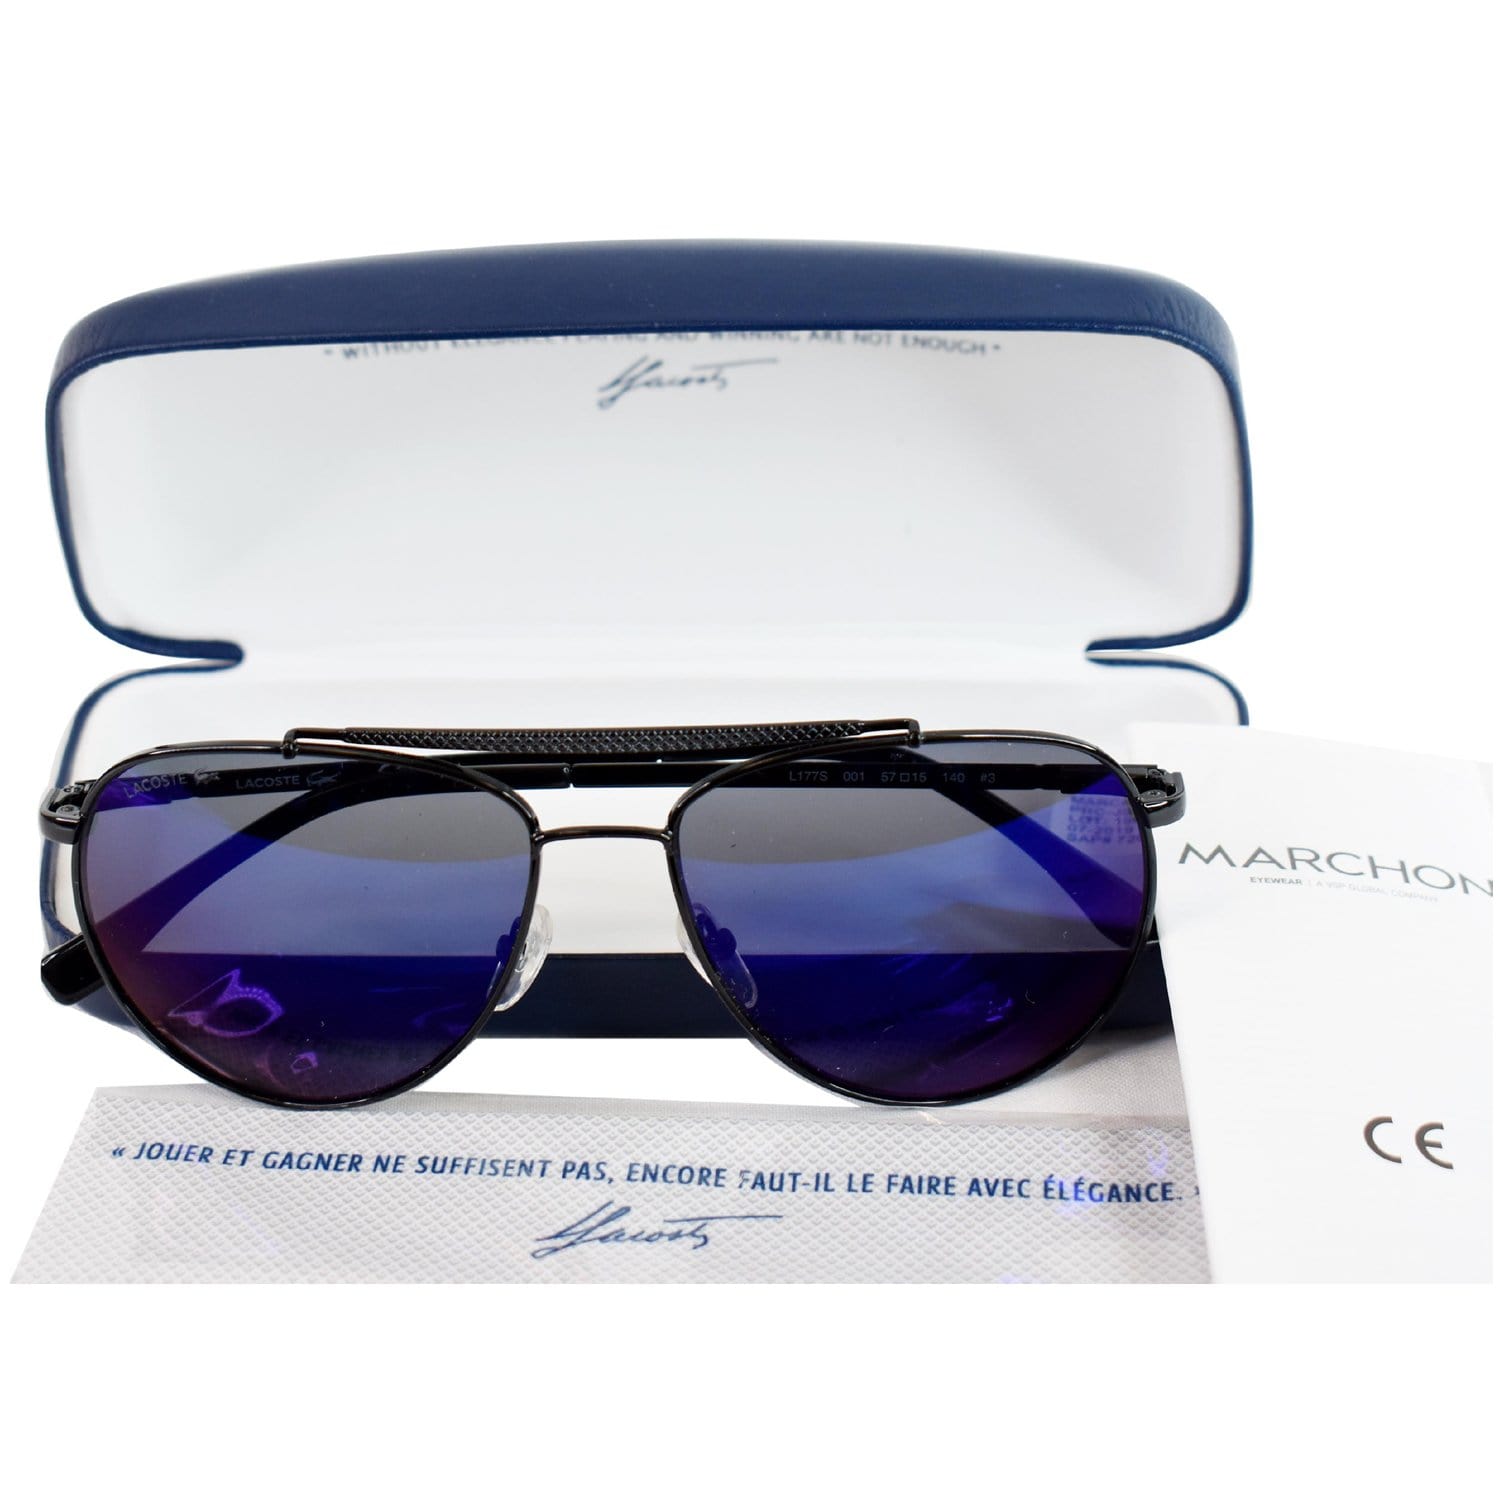 Stylish Unisex Sunglasses with UV Protection